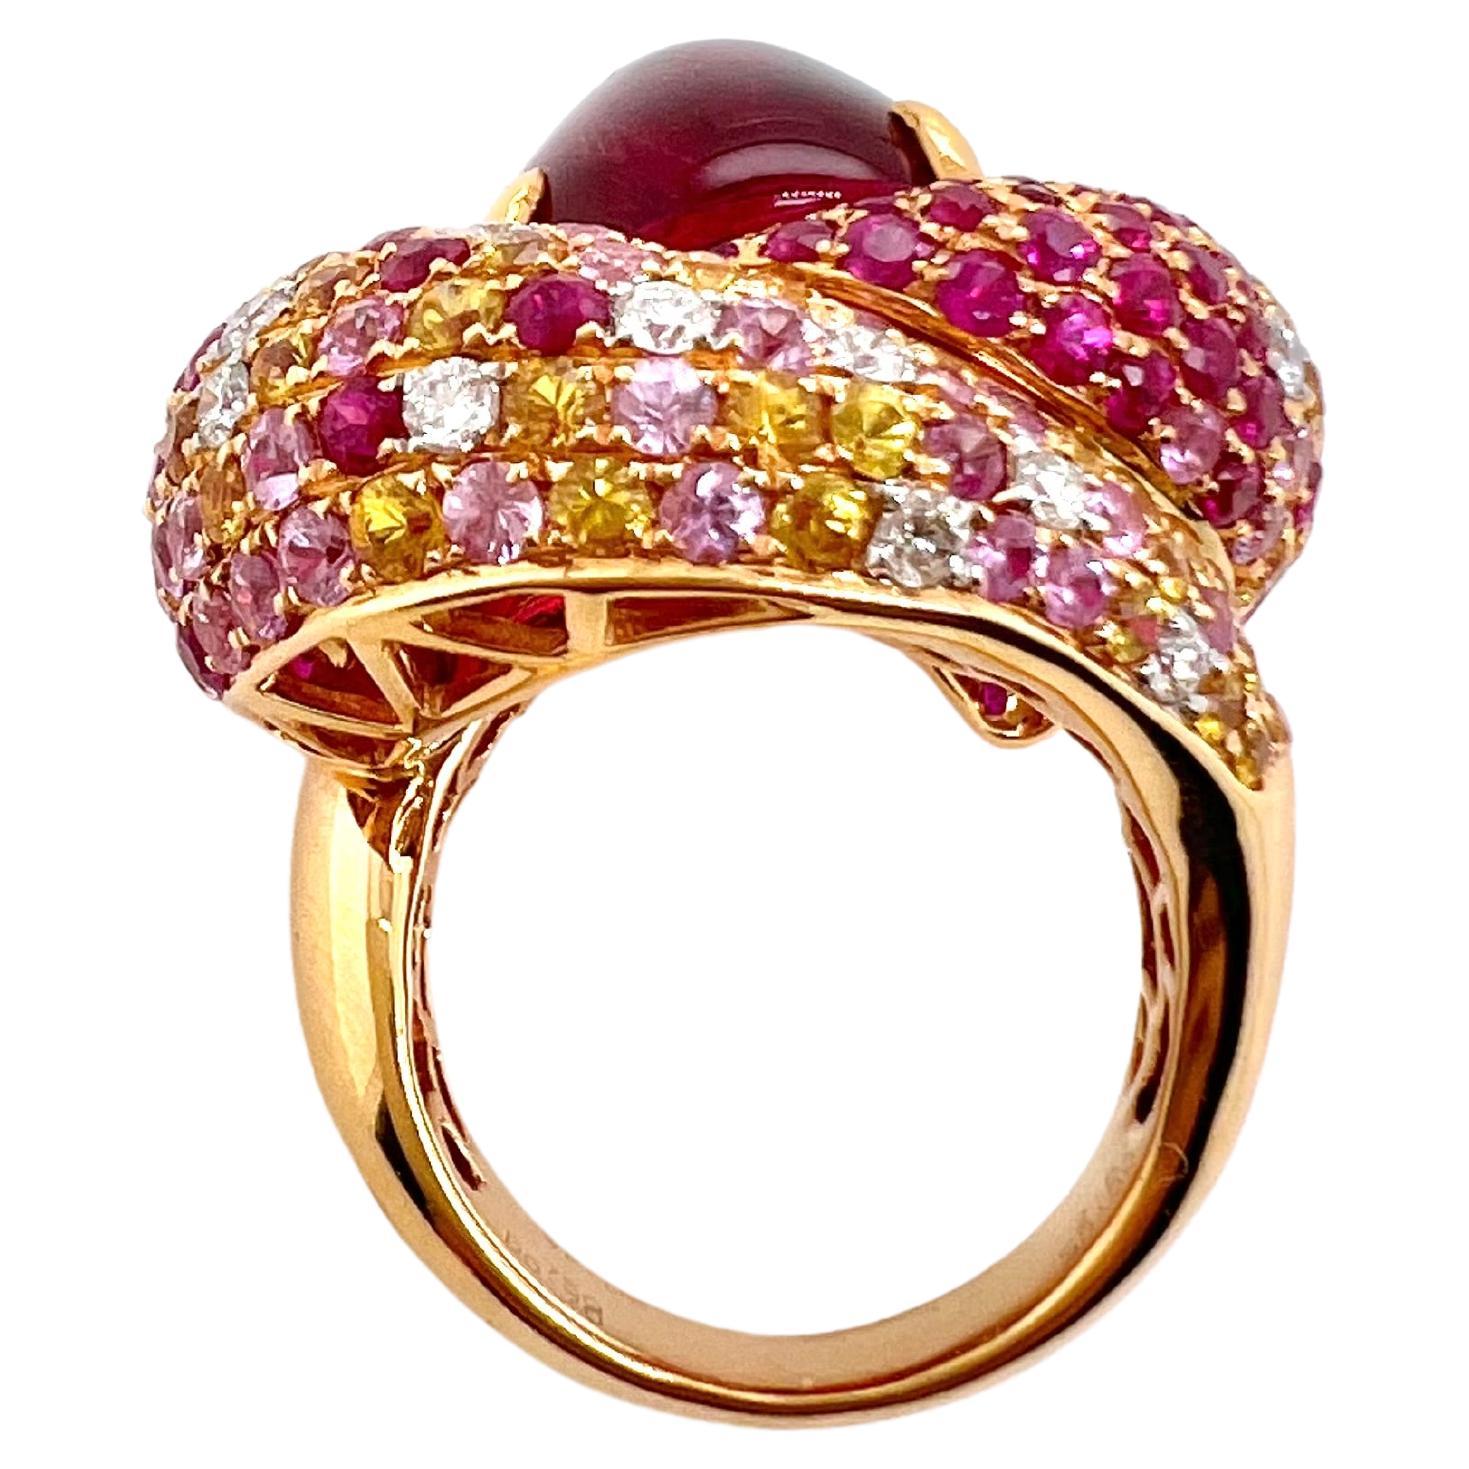 Dieser wunderschöne Cabochon-Ring aus rosa Turmalin ist eine Sonderanfertigung, die alle Blicke auf sich zieht.  Die rosafarbenen und gelben Saphire sind zusammen mit den runden Brillanten verstreut und verleihen dem Ring ein Erdbeertörtchen.  Der